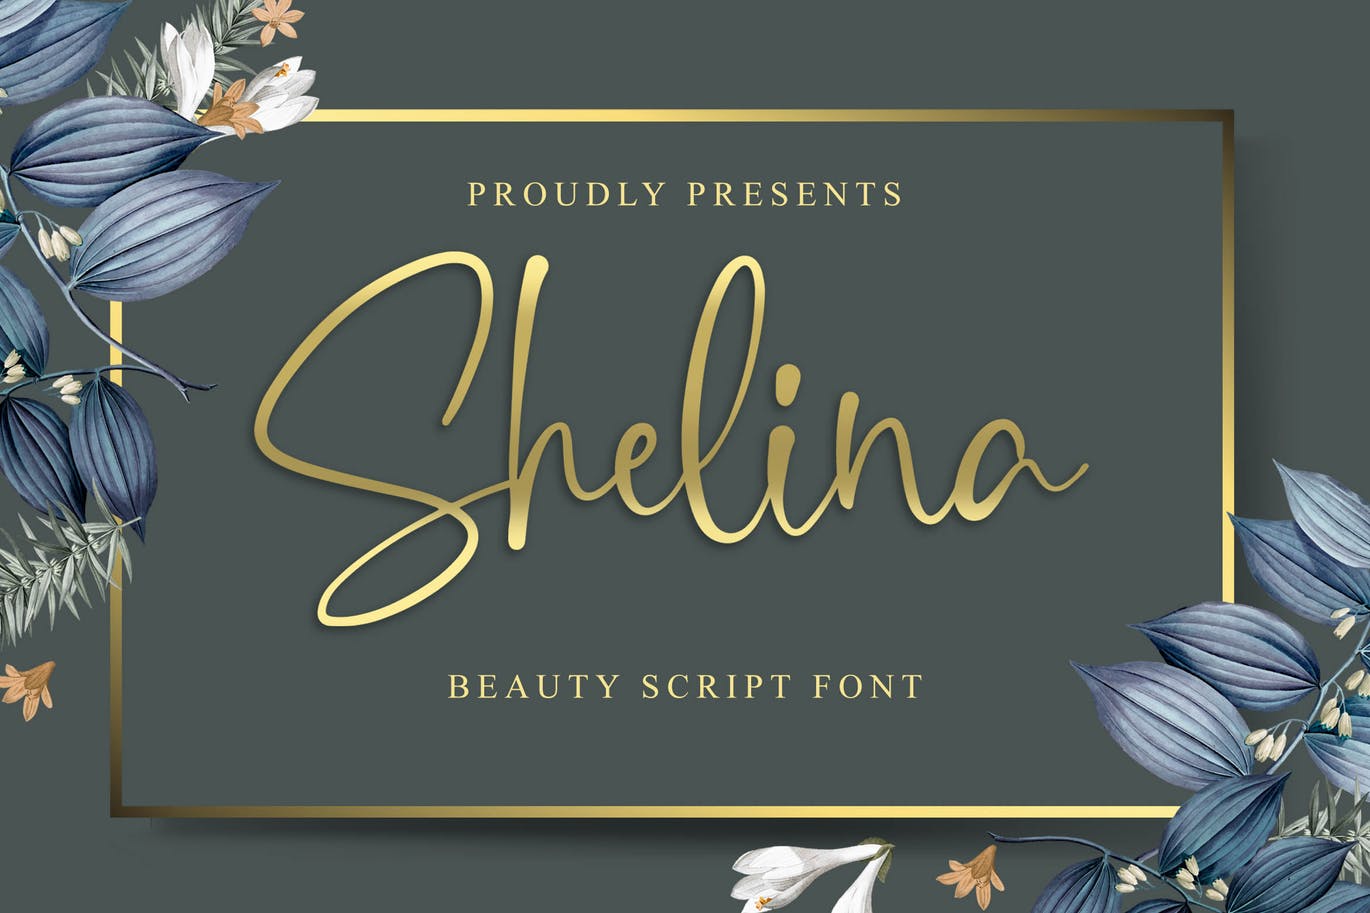 英文连笔书法字体蚂蚁素材精选 Shelina Beauty Script Font插图